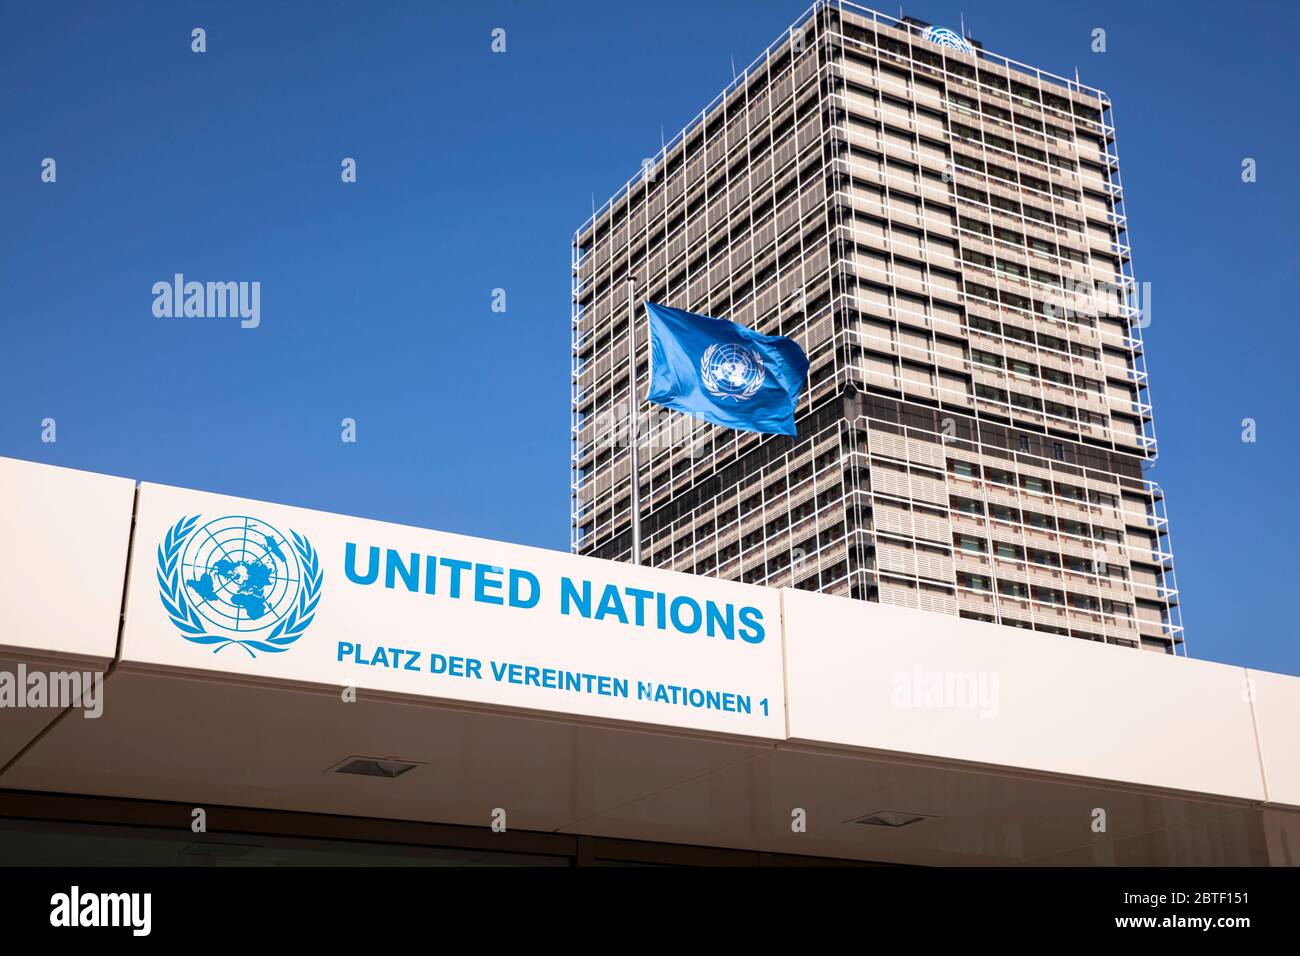 entrée au campus de l'ONU avec le bâtiment de bureaux Tall Eugen, il abrite plusieurs organisations des Nations Unies, Bonn, Rhénanie-du-Nord-Westphalie, Allemagne. Banque D'Images